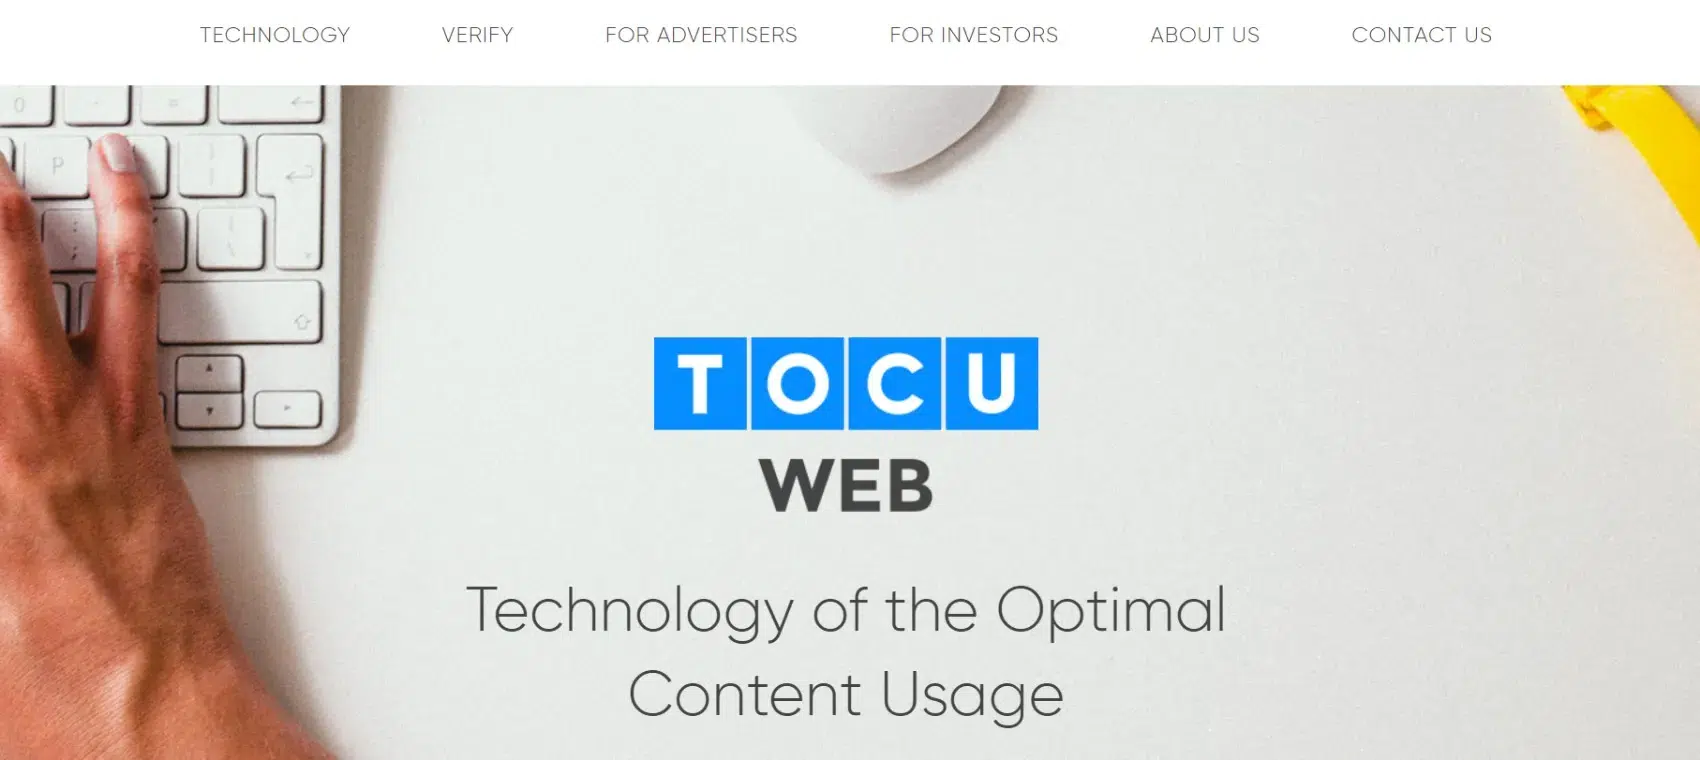 TOCU Web